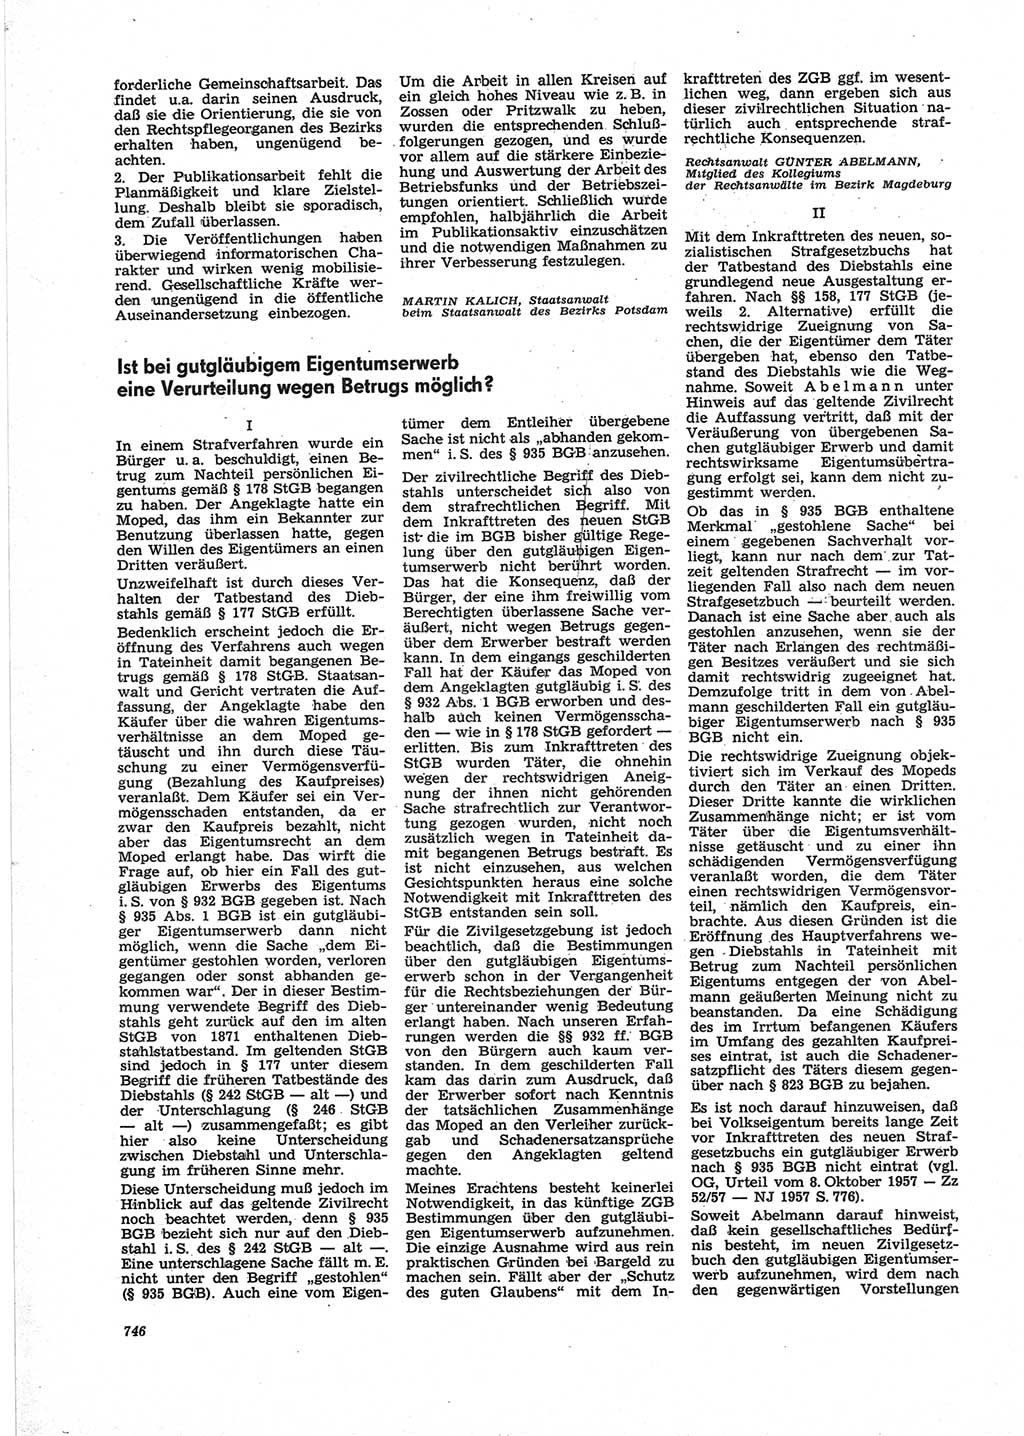 Neue Justiz (NJ), Zeitschrift für Recht und Rechtswissenschaft [Deutsche Demokratische Republik (DDR)], 25. Jahrgang 1971, Seite 746 (NJ DDR 1971, S. 746)